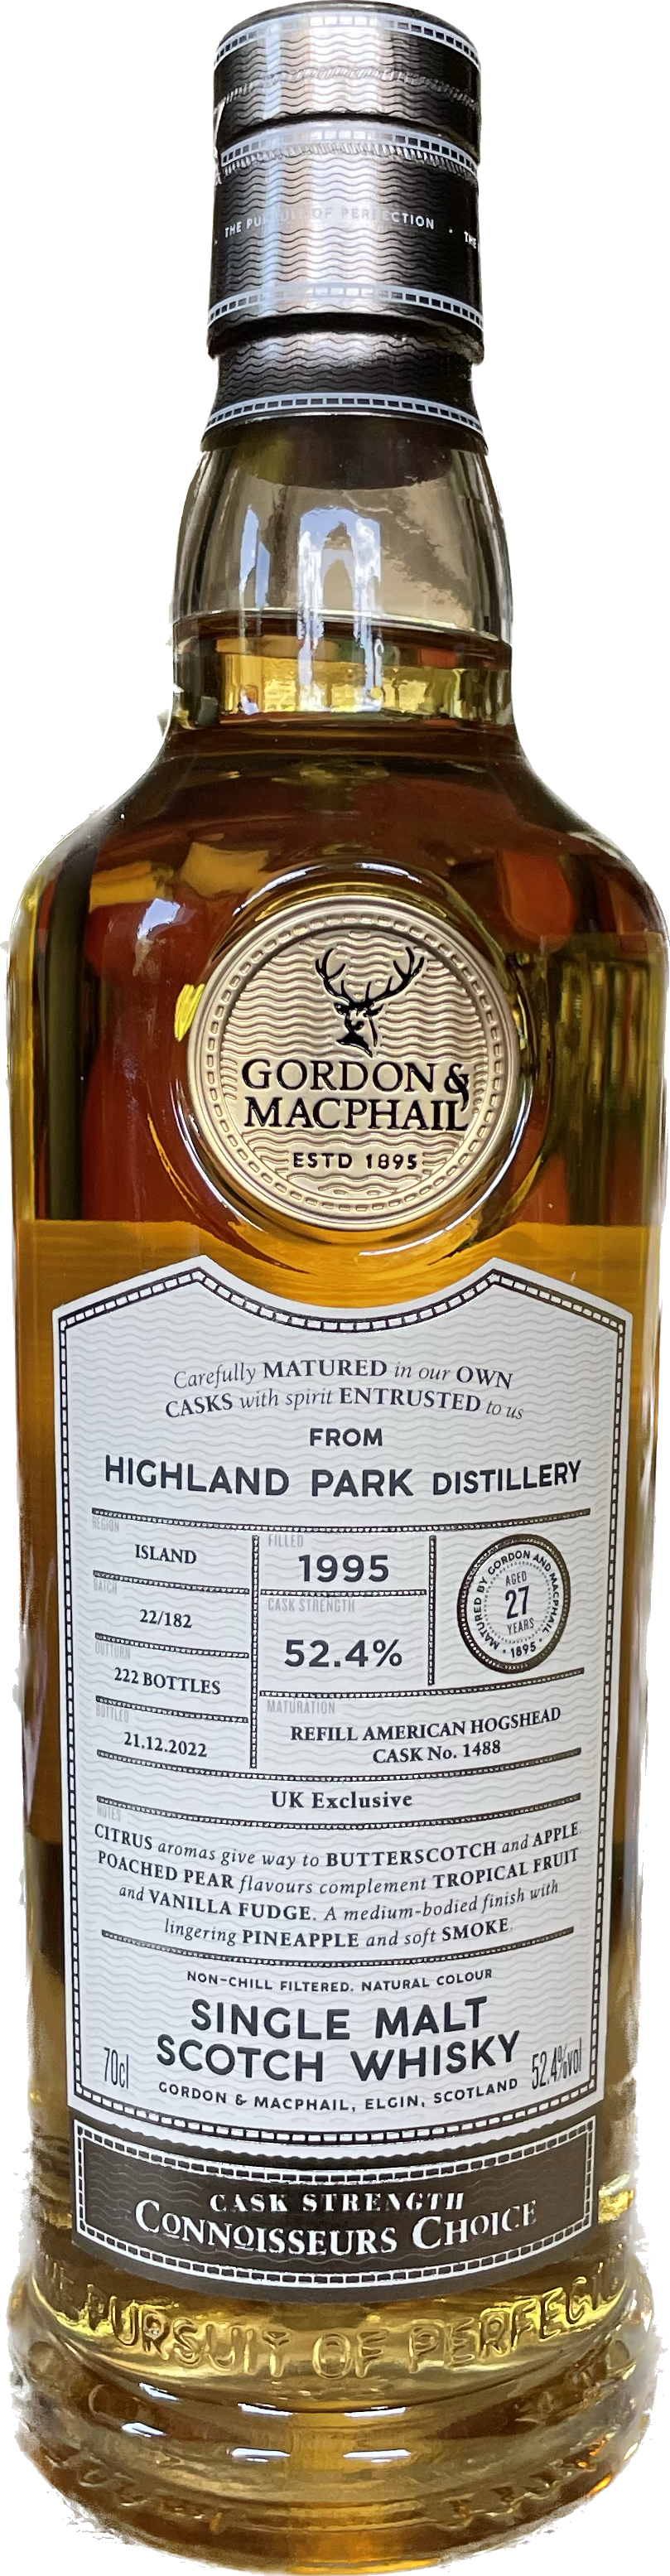 Highland Park Distillery 27 Jahre Whisky